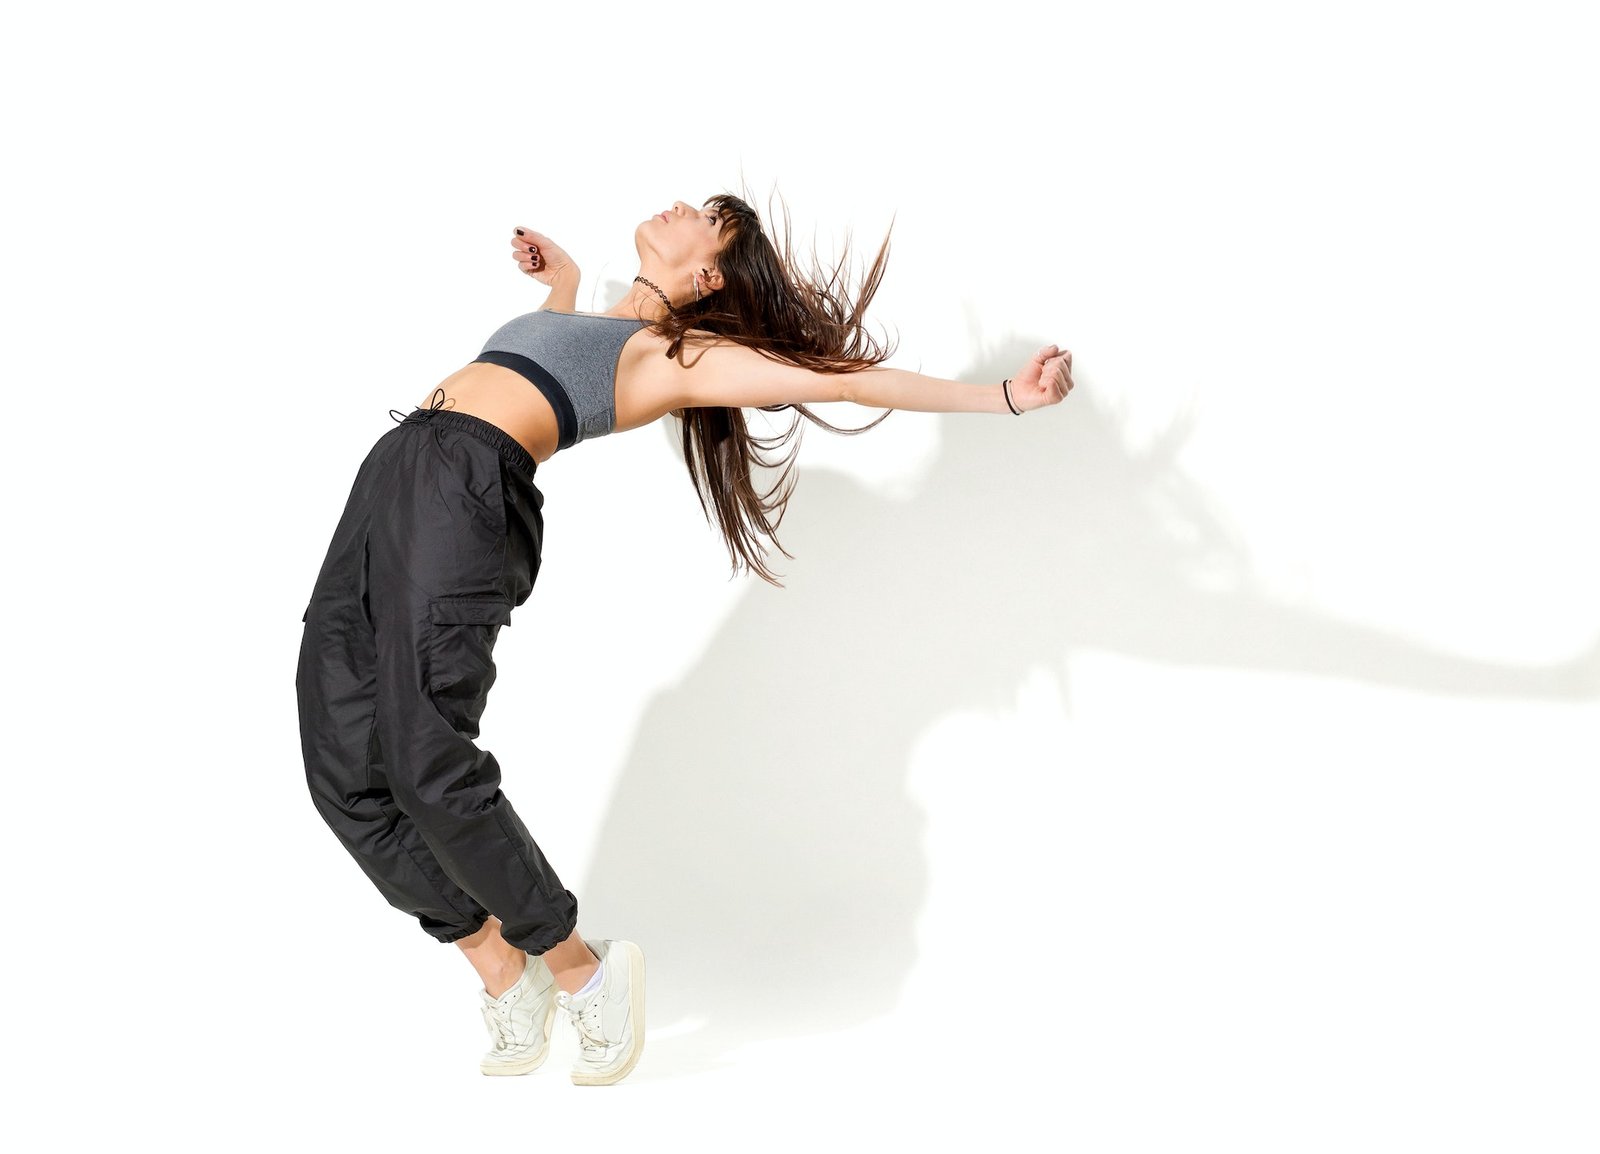 flexible-woman-dancing-hip-hop-in-studio.jpg